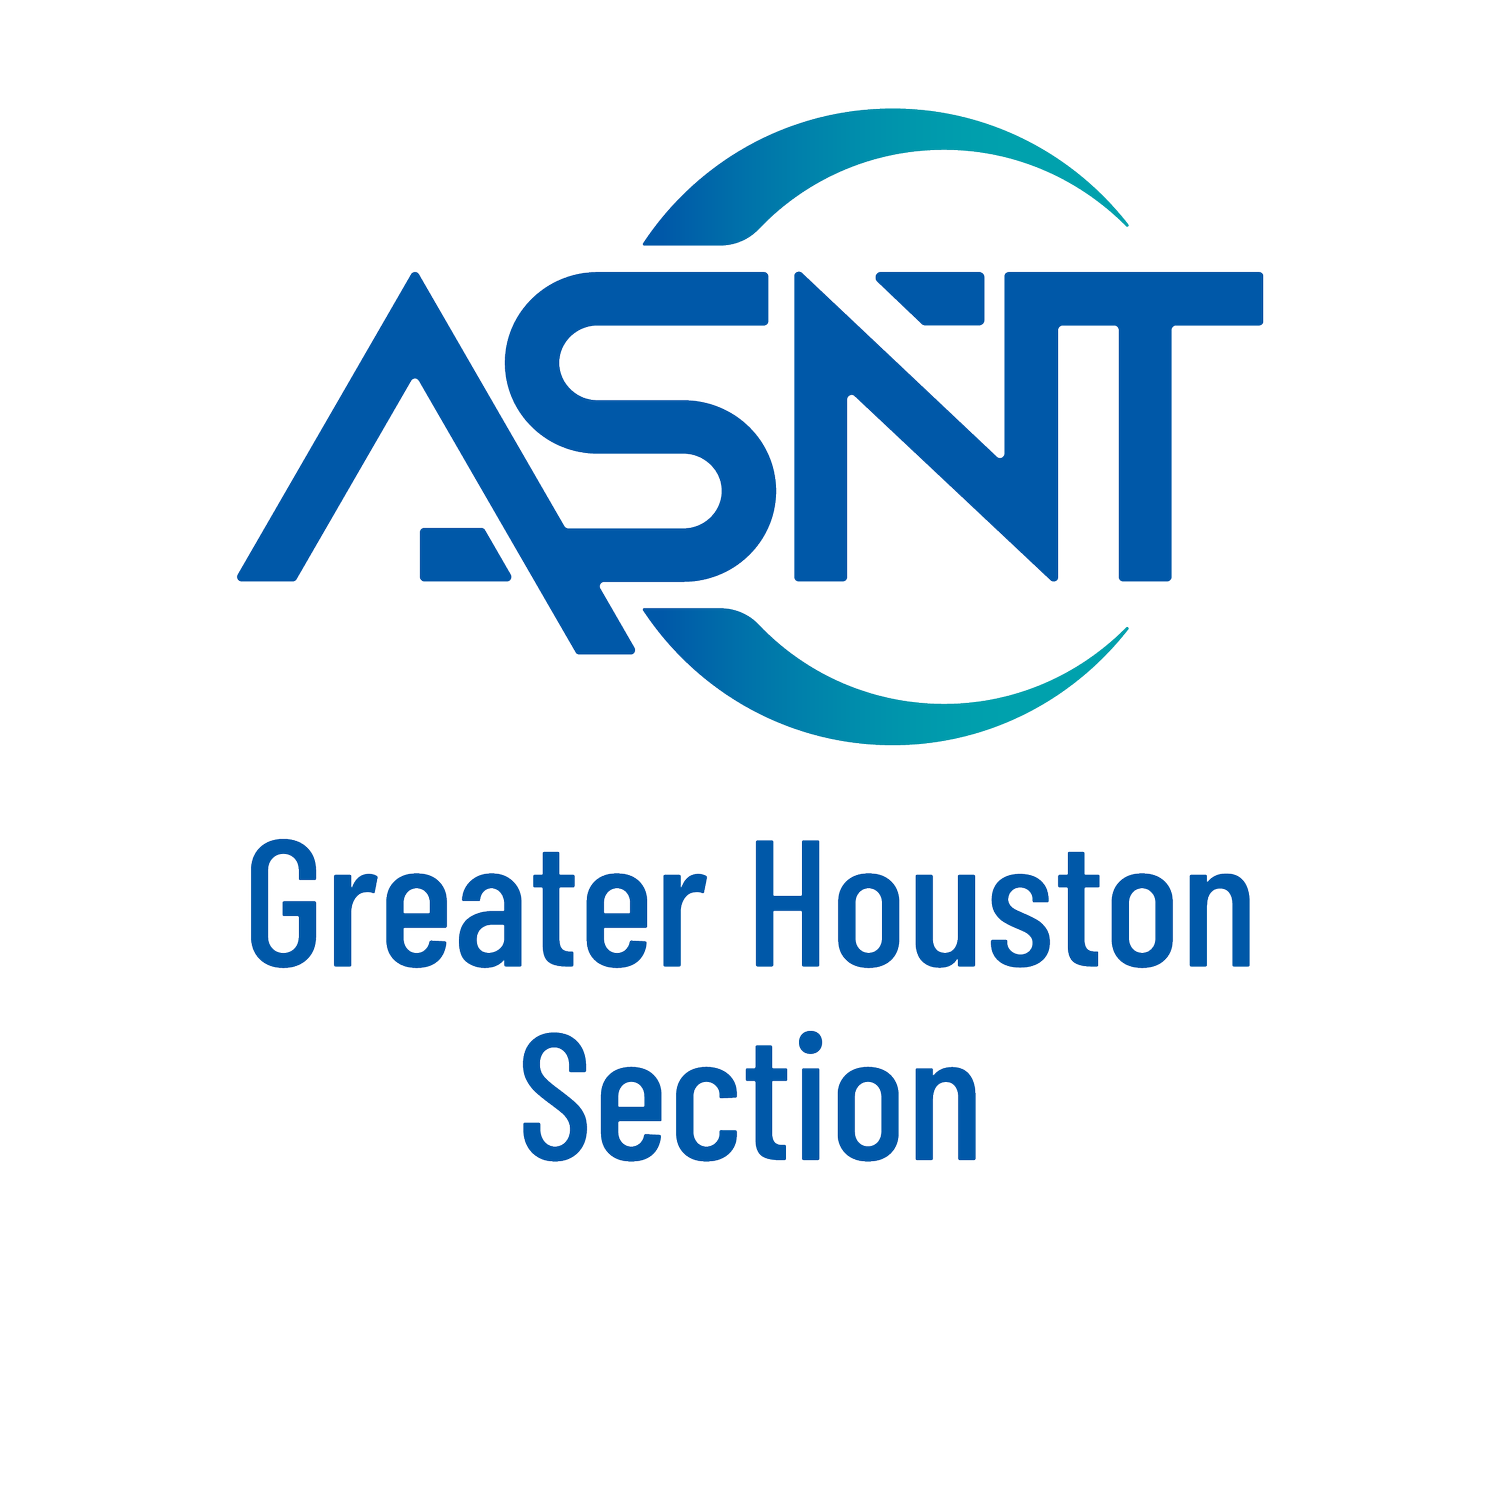 Greater Houston ASNT